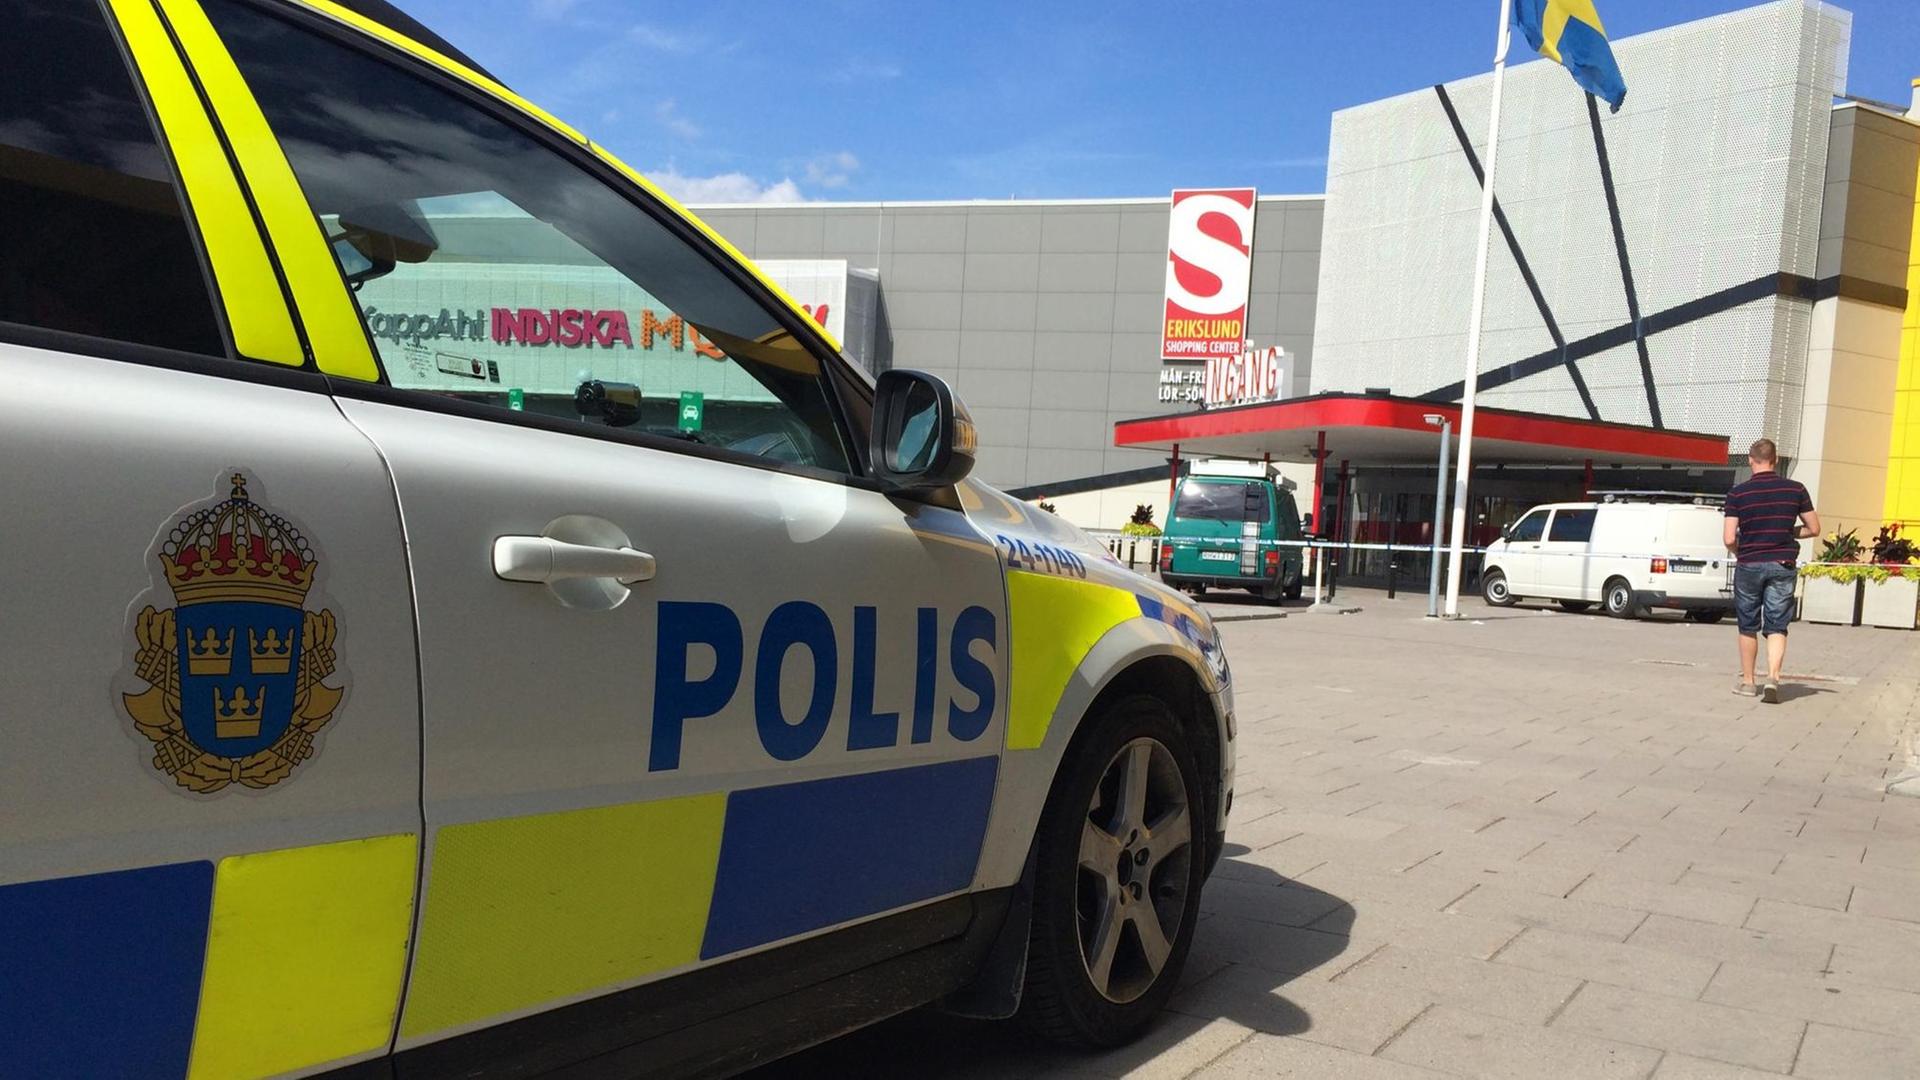 Mobilphone-Aufnahme nach einer Messerattacke im Möbelkaus Ikea in Vasteras/Schweden am 10.08.15. Ein Polizeiwagen steht vor dem Gebäude. AFP PHOTO / TT NEWS AGENCY / PETER KRUGER